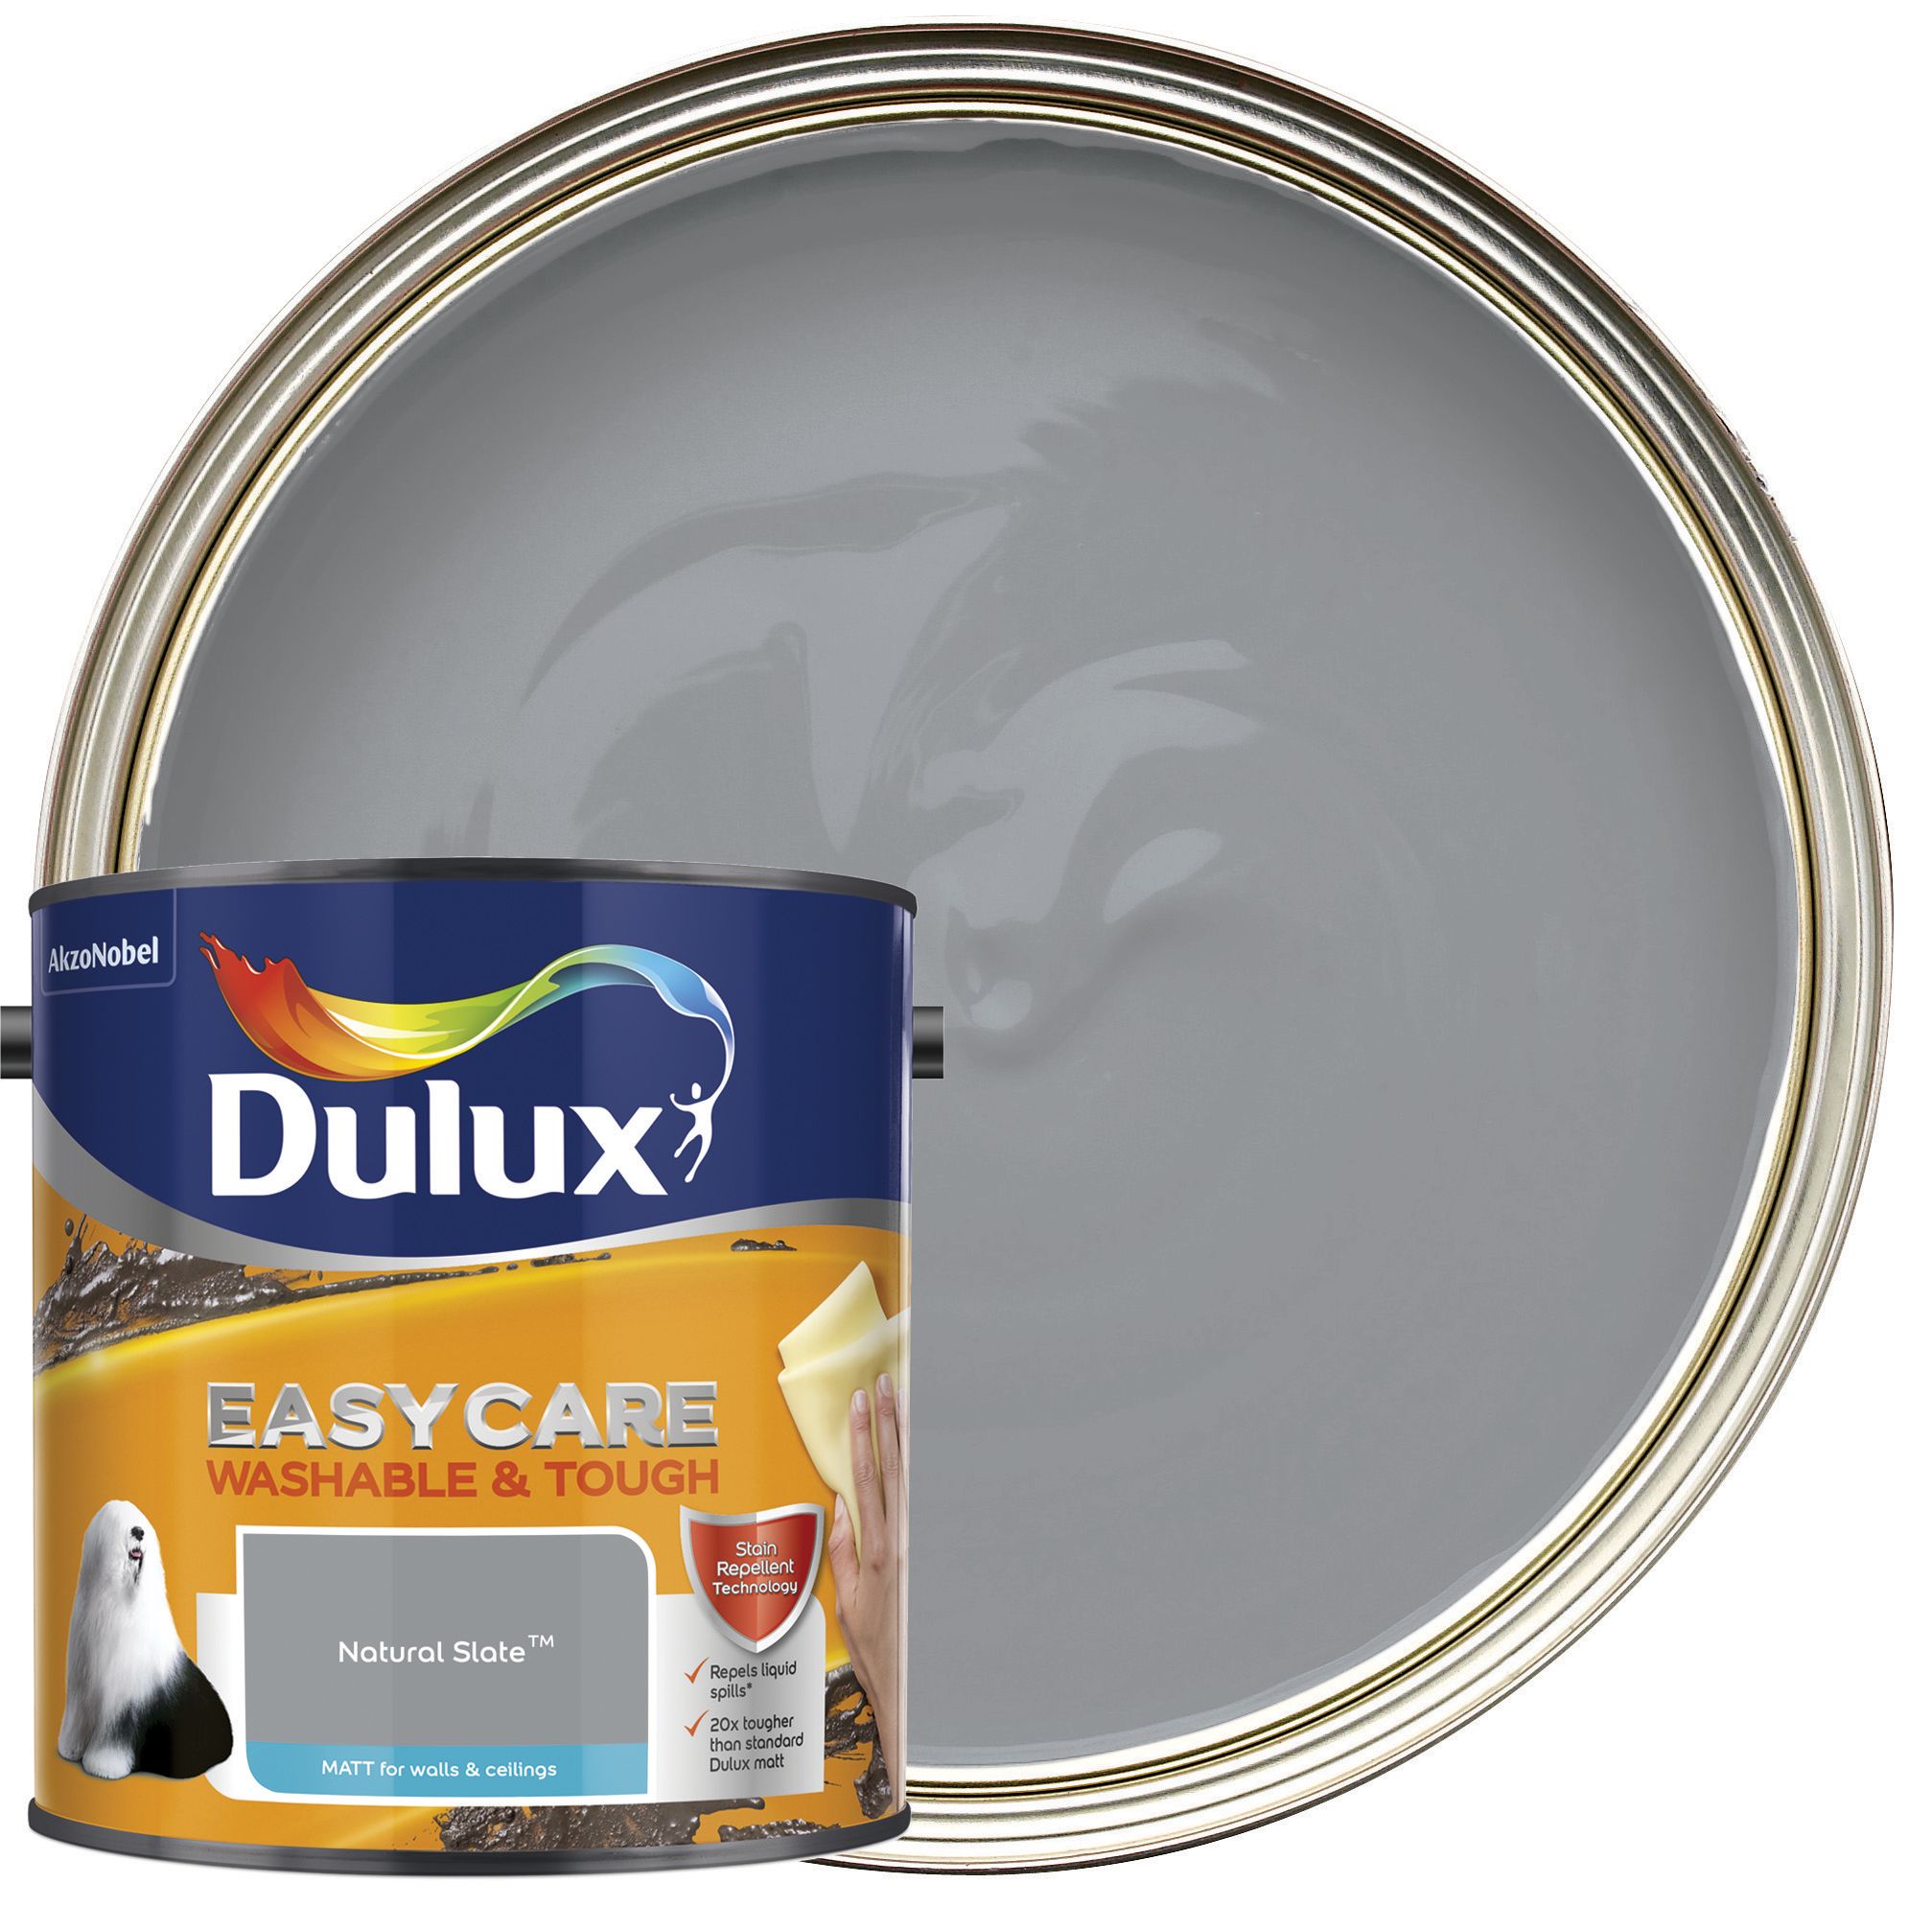 Dulux Easycare Washable & Tough Matt Emulsion Paint - Natural Slate - 2.5L